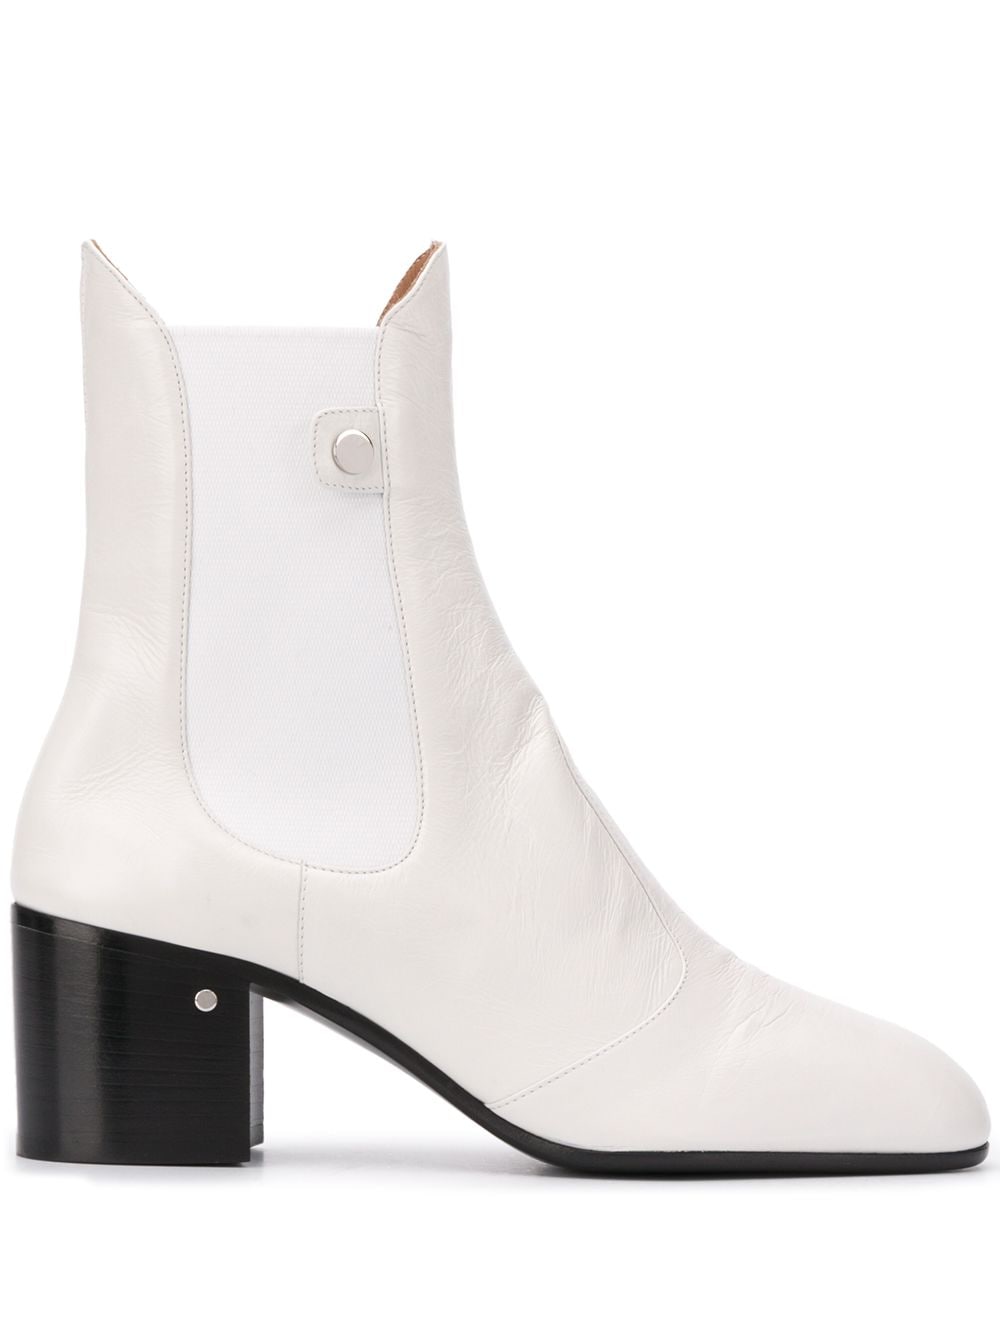 Laurence Dacade block-heel ankle boots